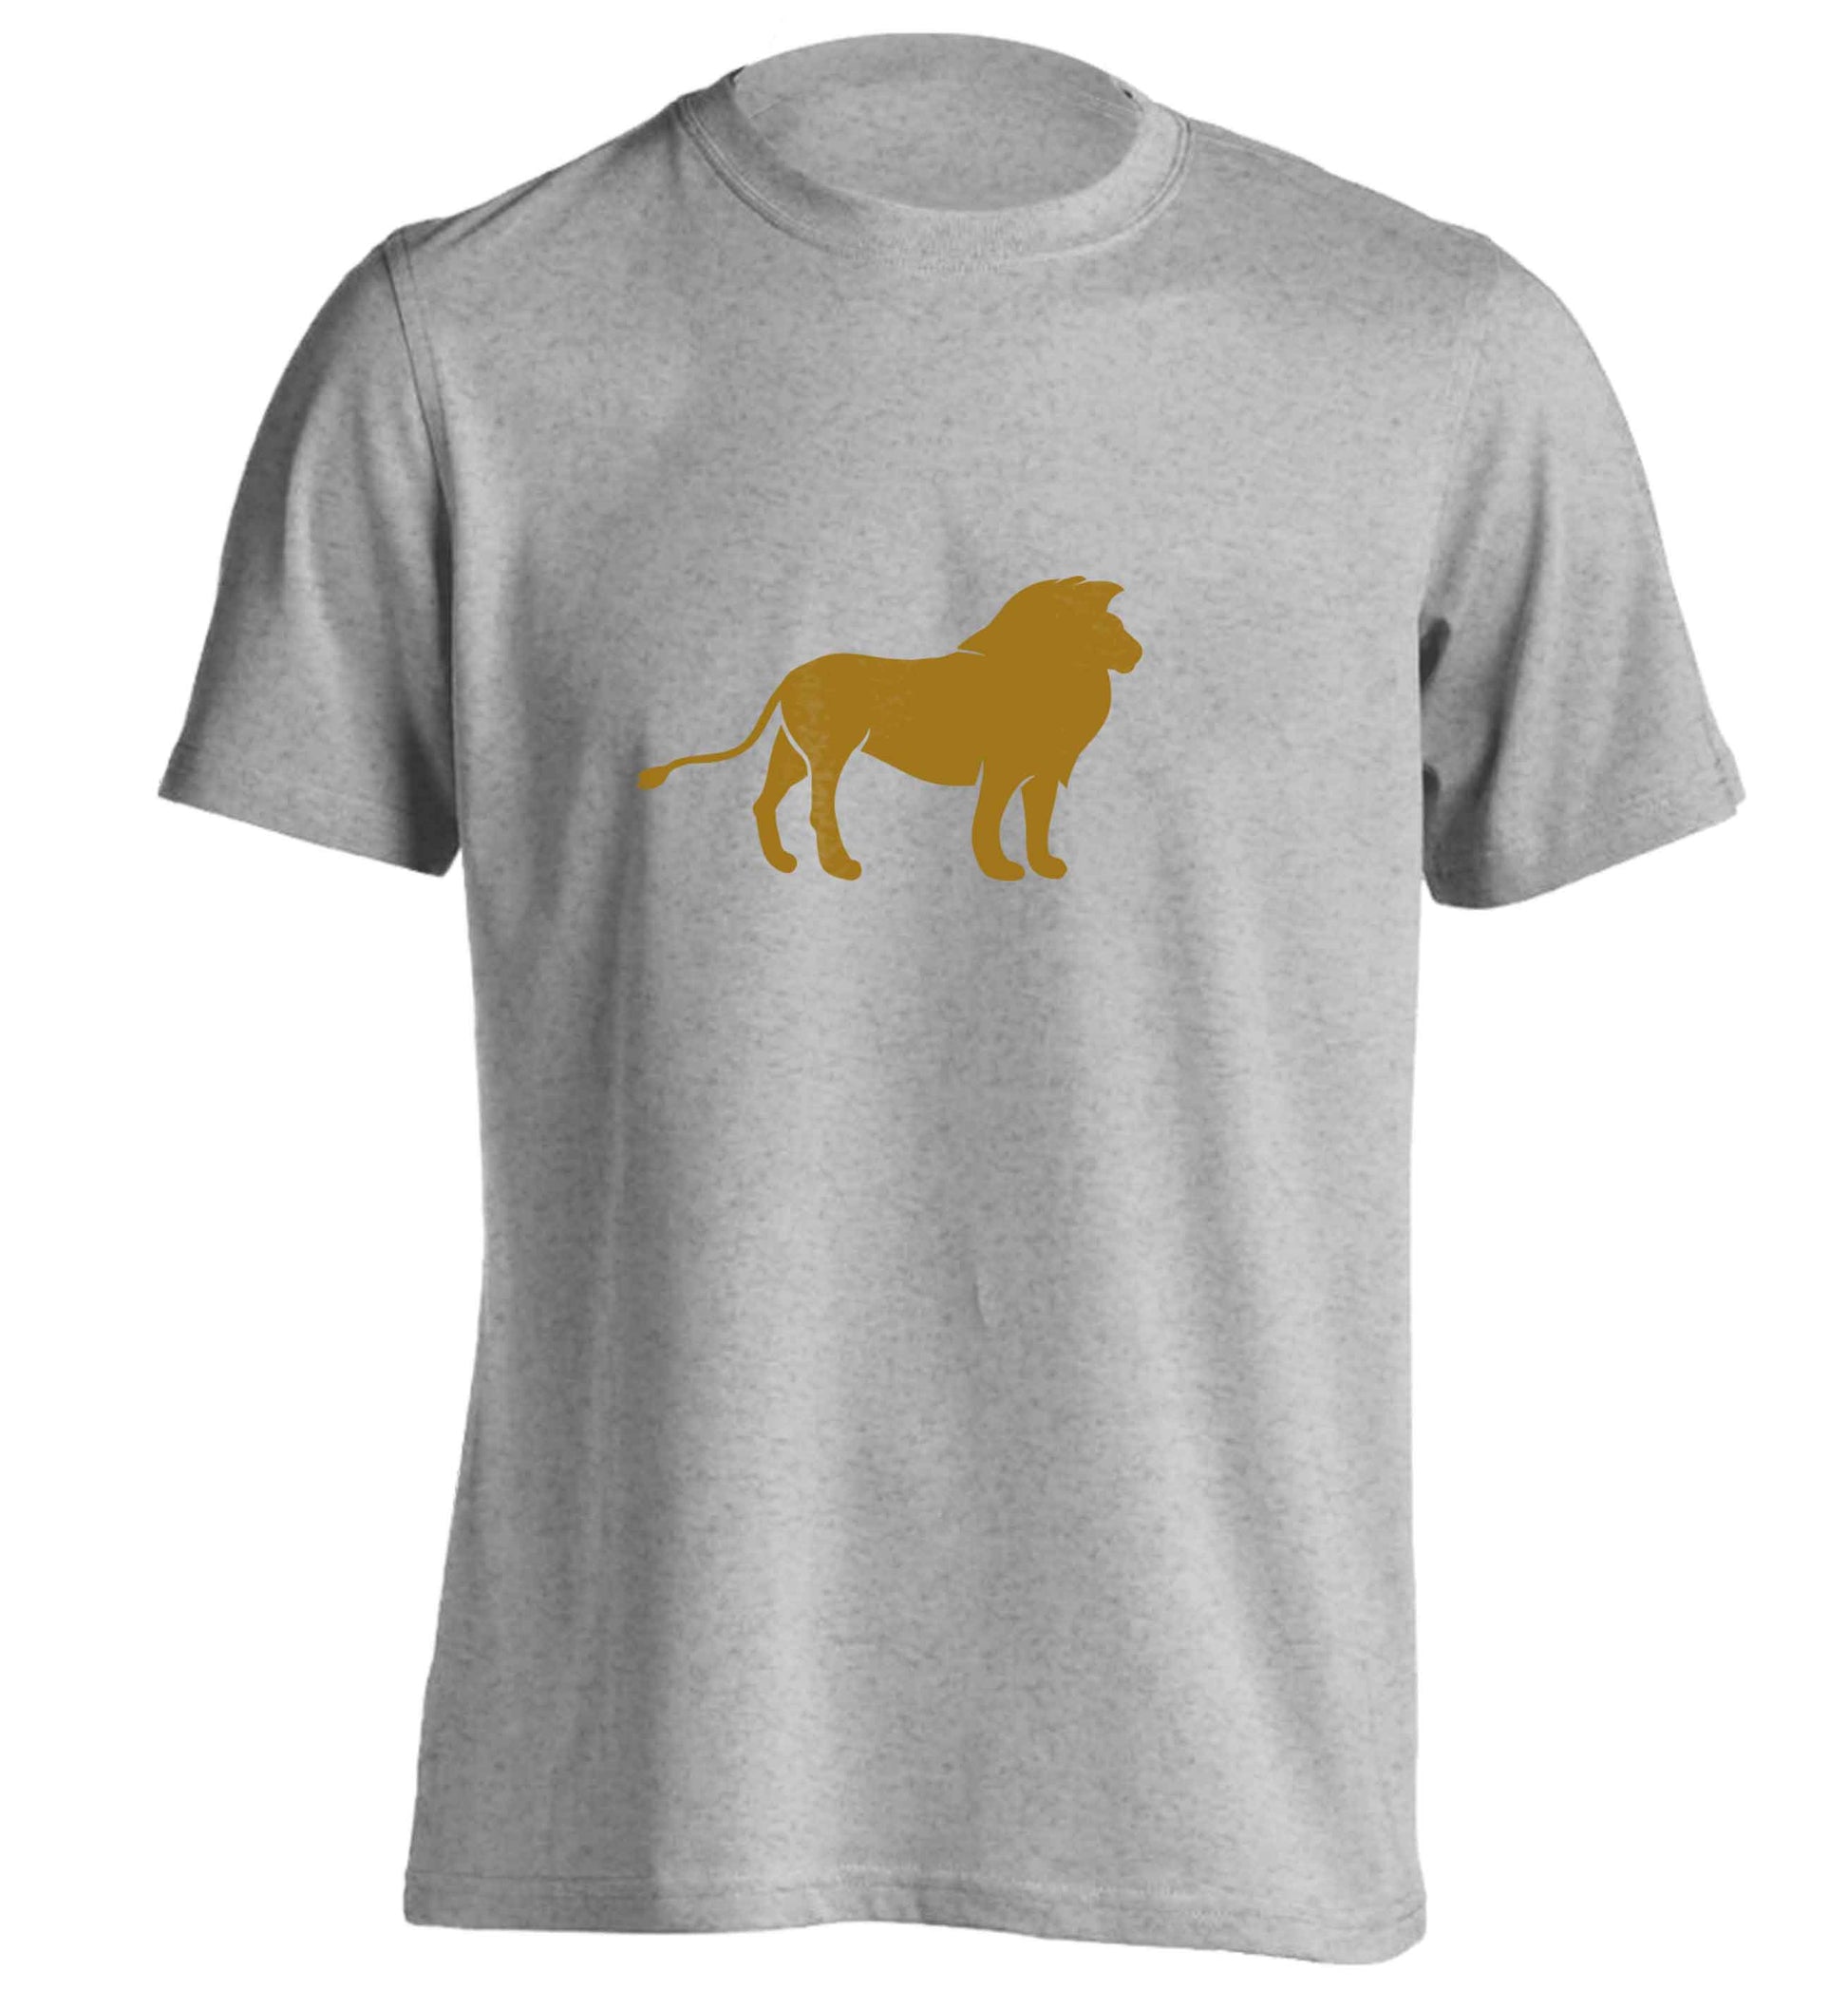 Gold lion adults unisex grey Tshirt 2XL